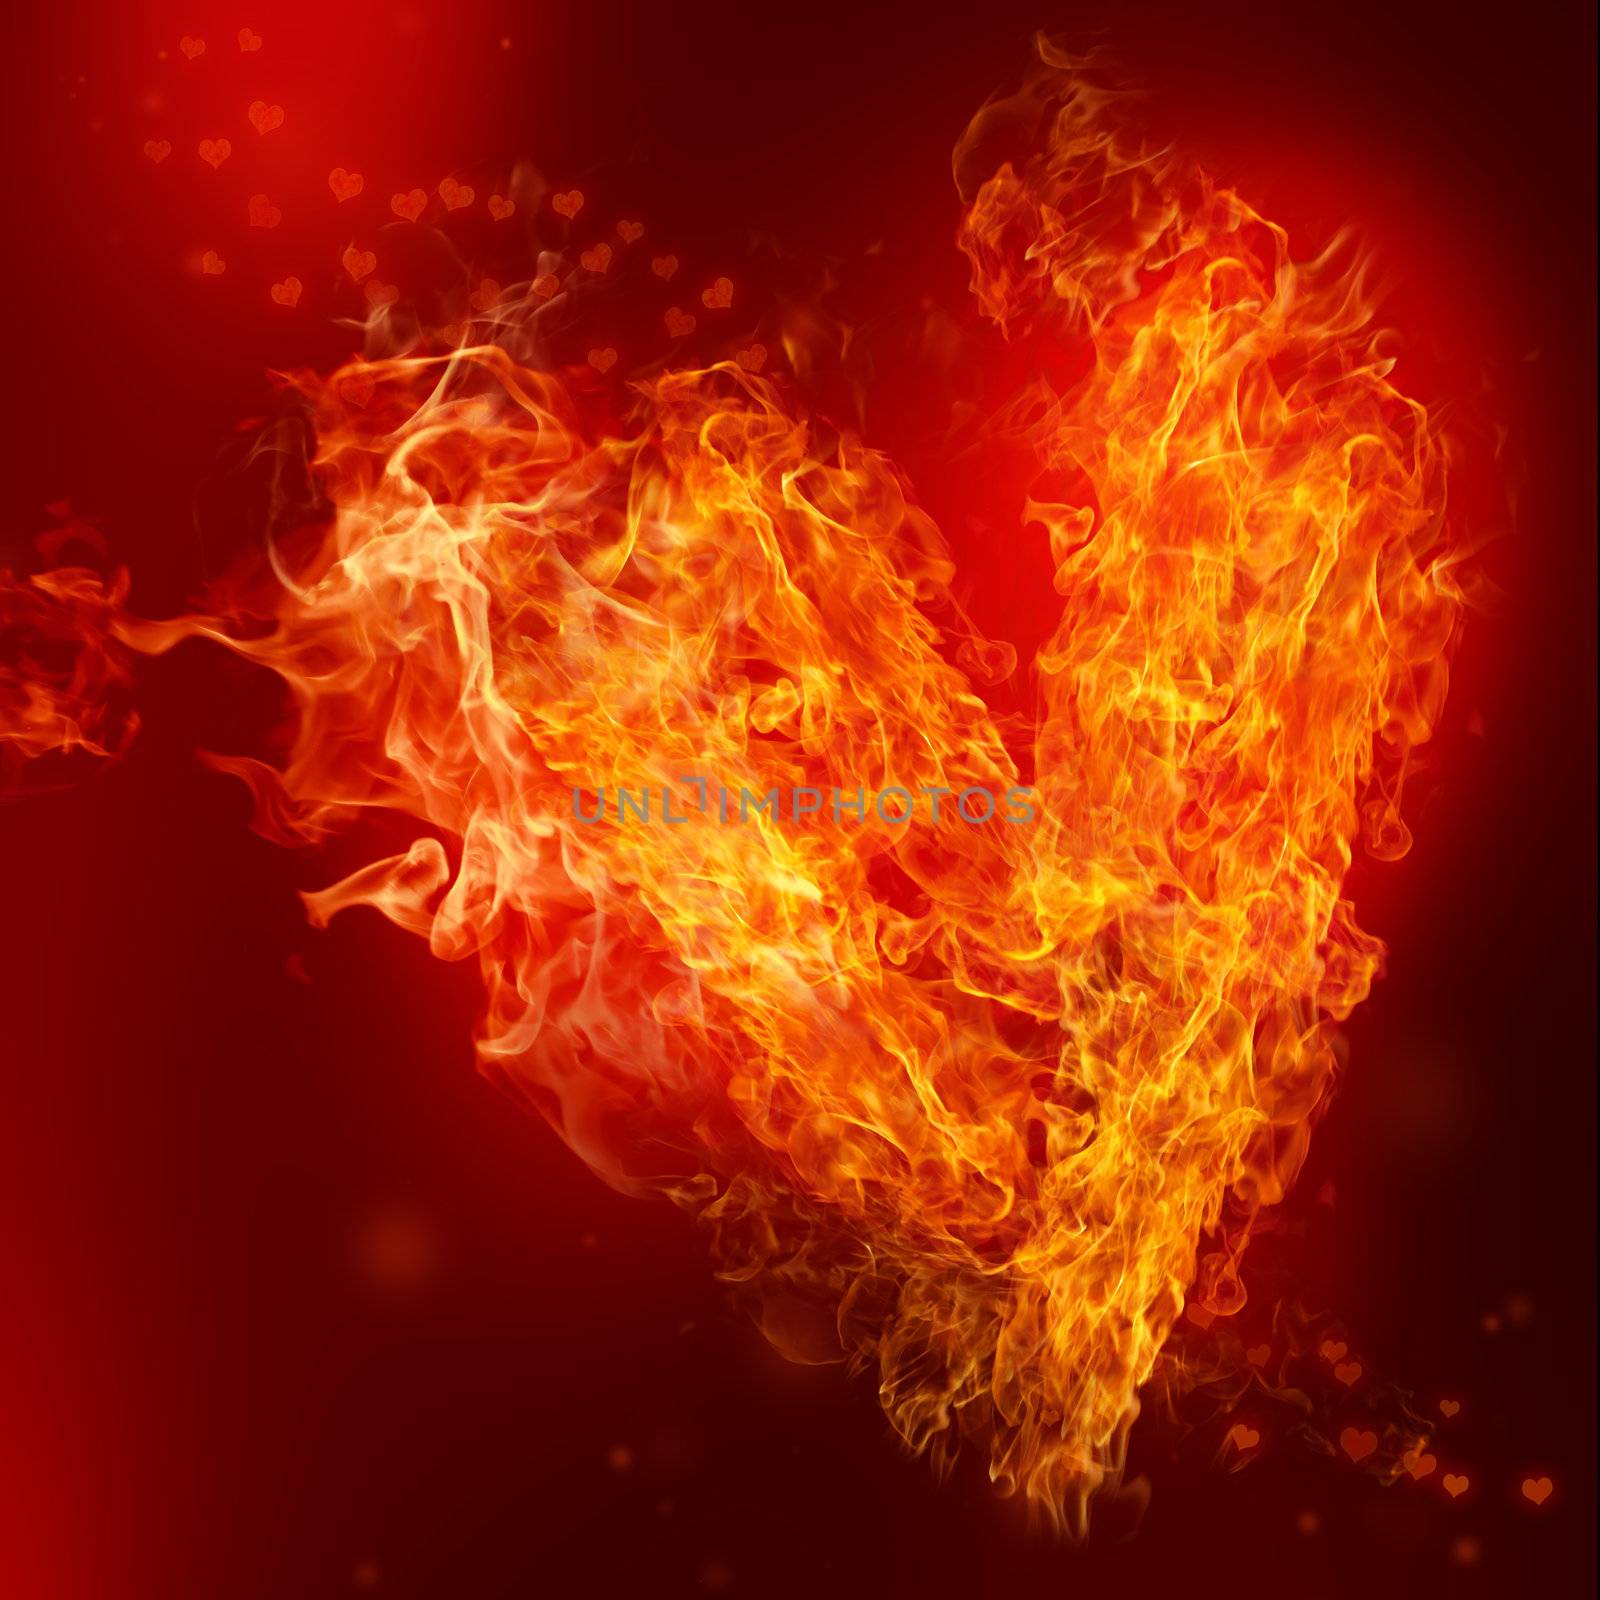 Fire Heart by melpomene